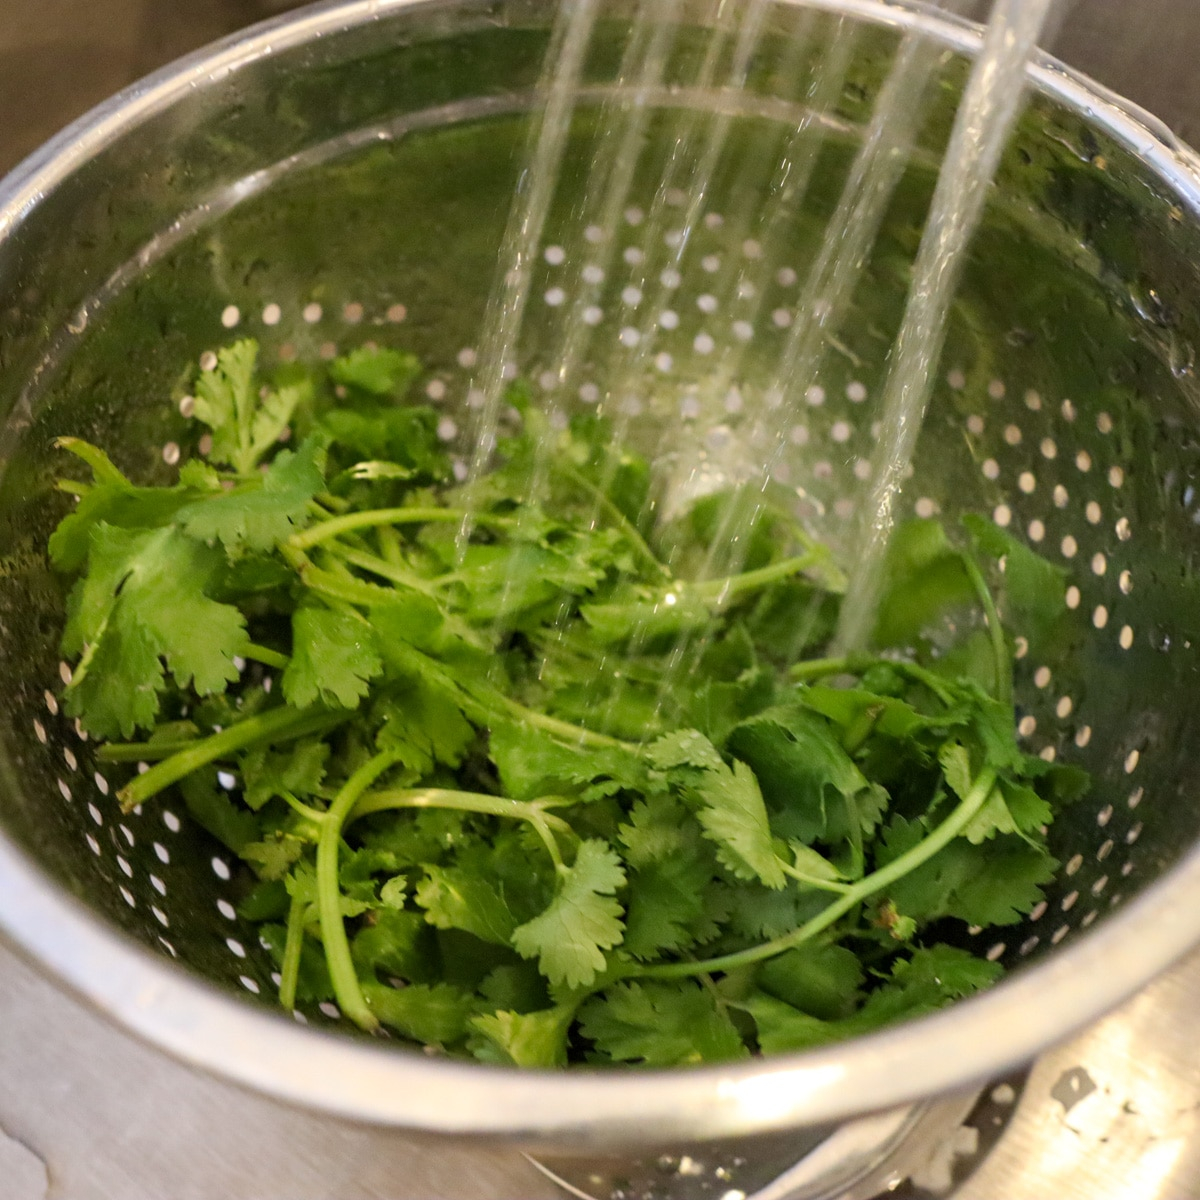 lavando cilantro (culantro)